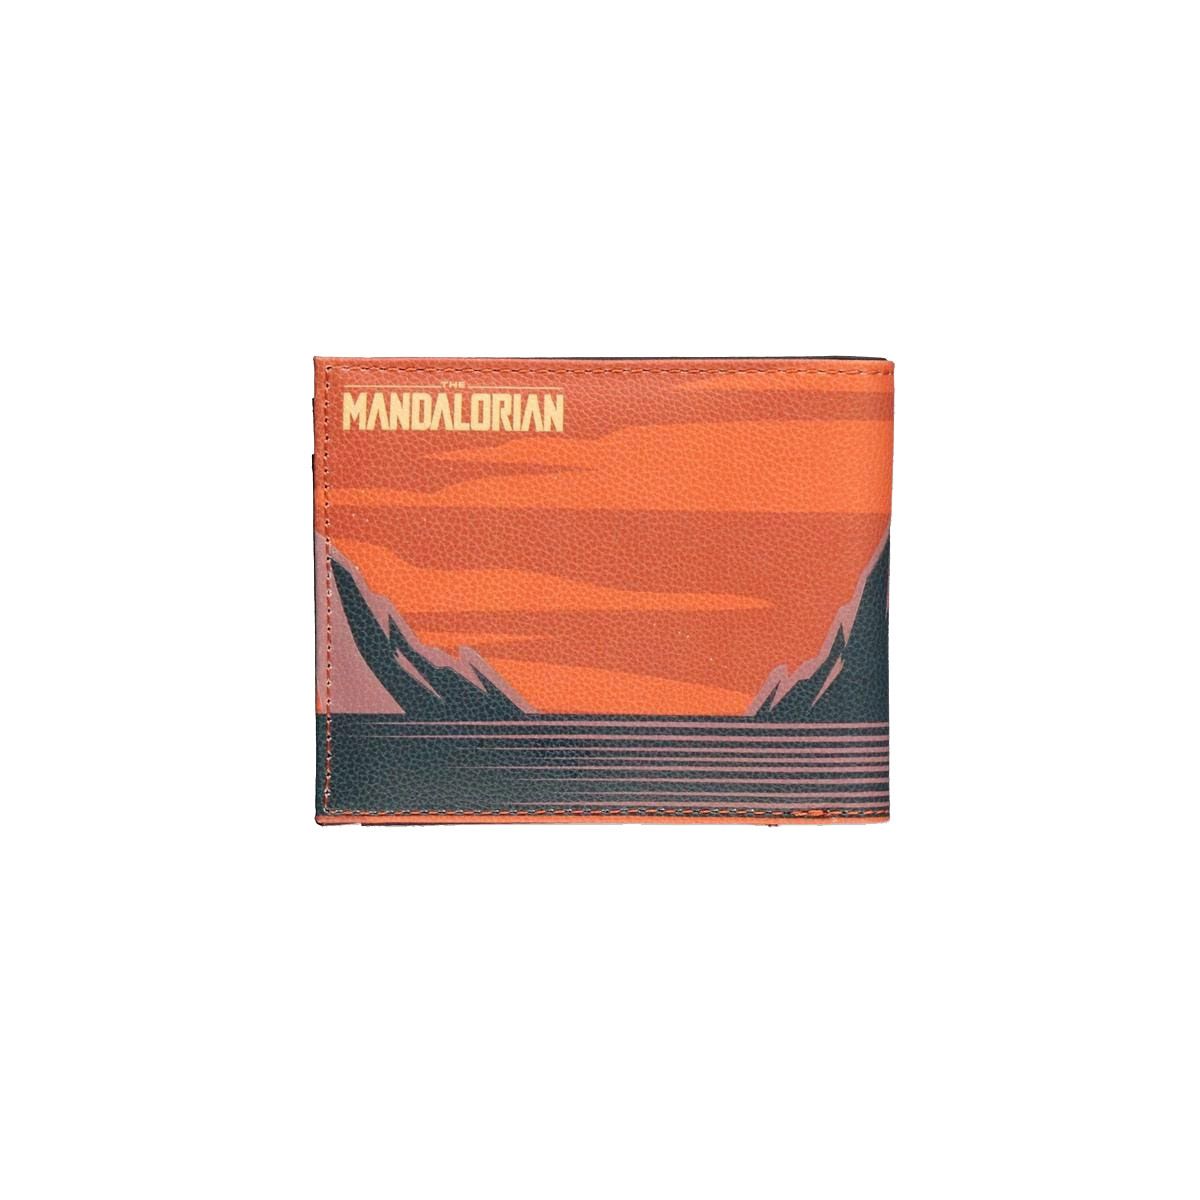 Πορτοφόλι με Εκτυπωμένη Δερματίνη Πορτοκαλί STAR WARS THE MANDALORIAN